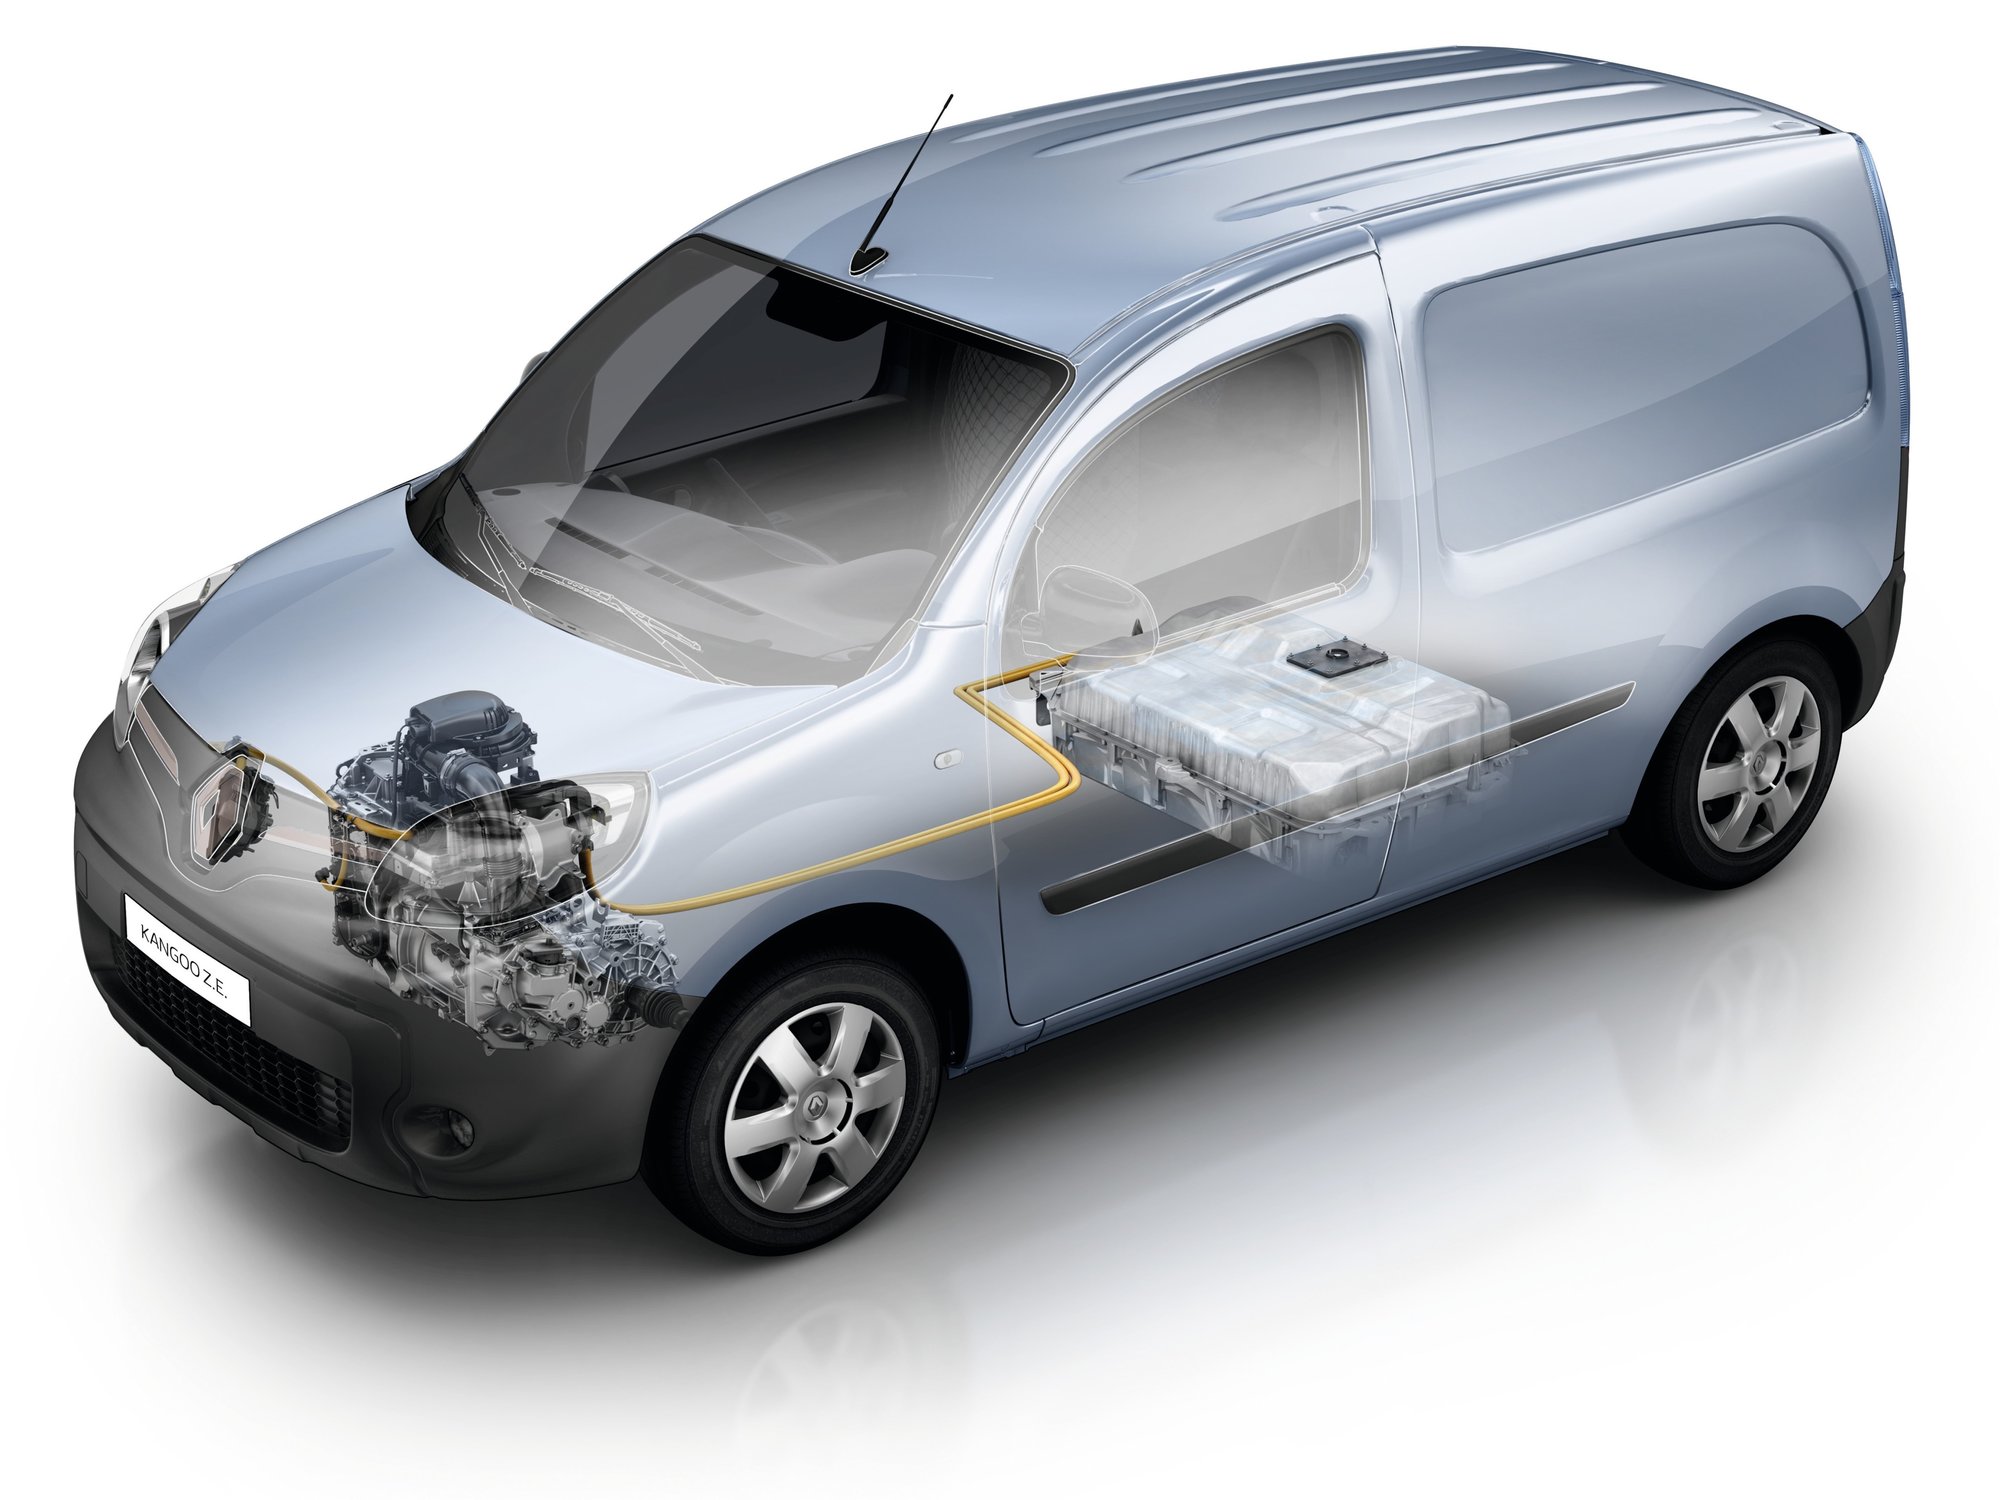 Renault Kangoo ZE dostal zásadní vylepšení pohonného ústrojí.